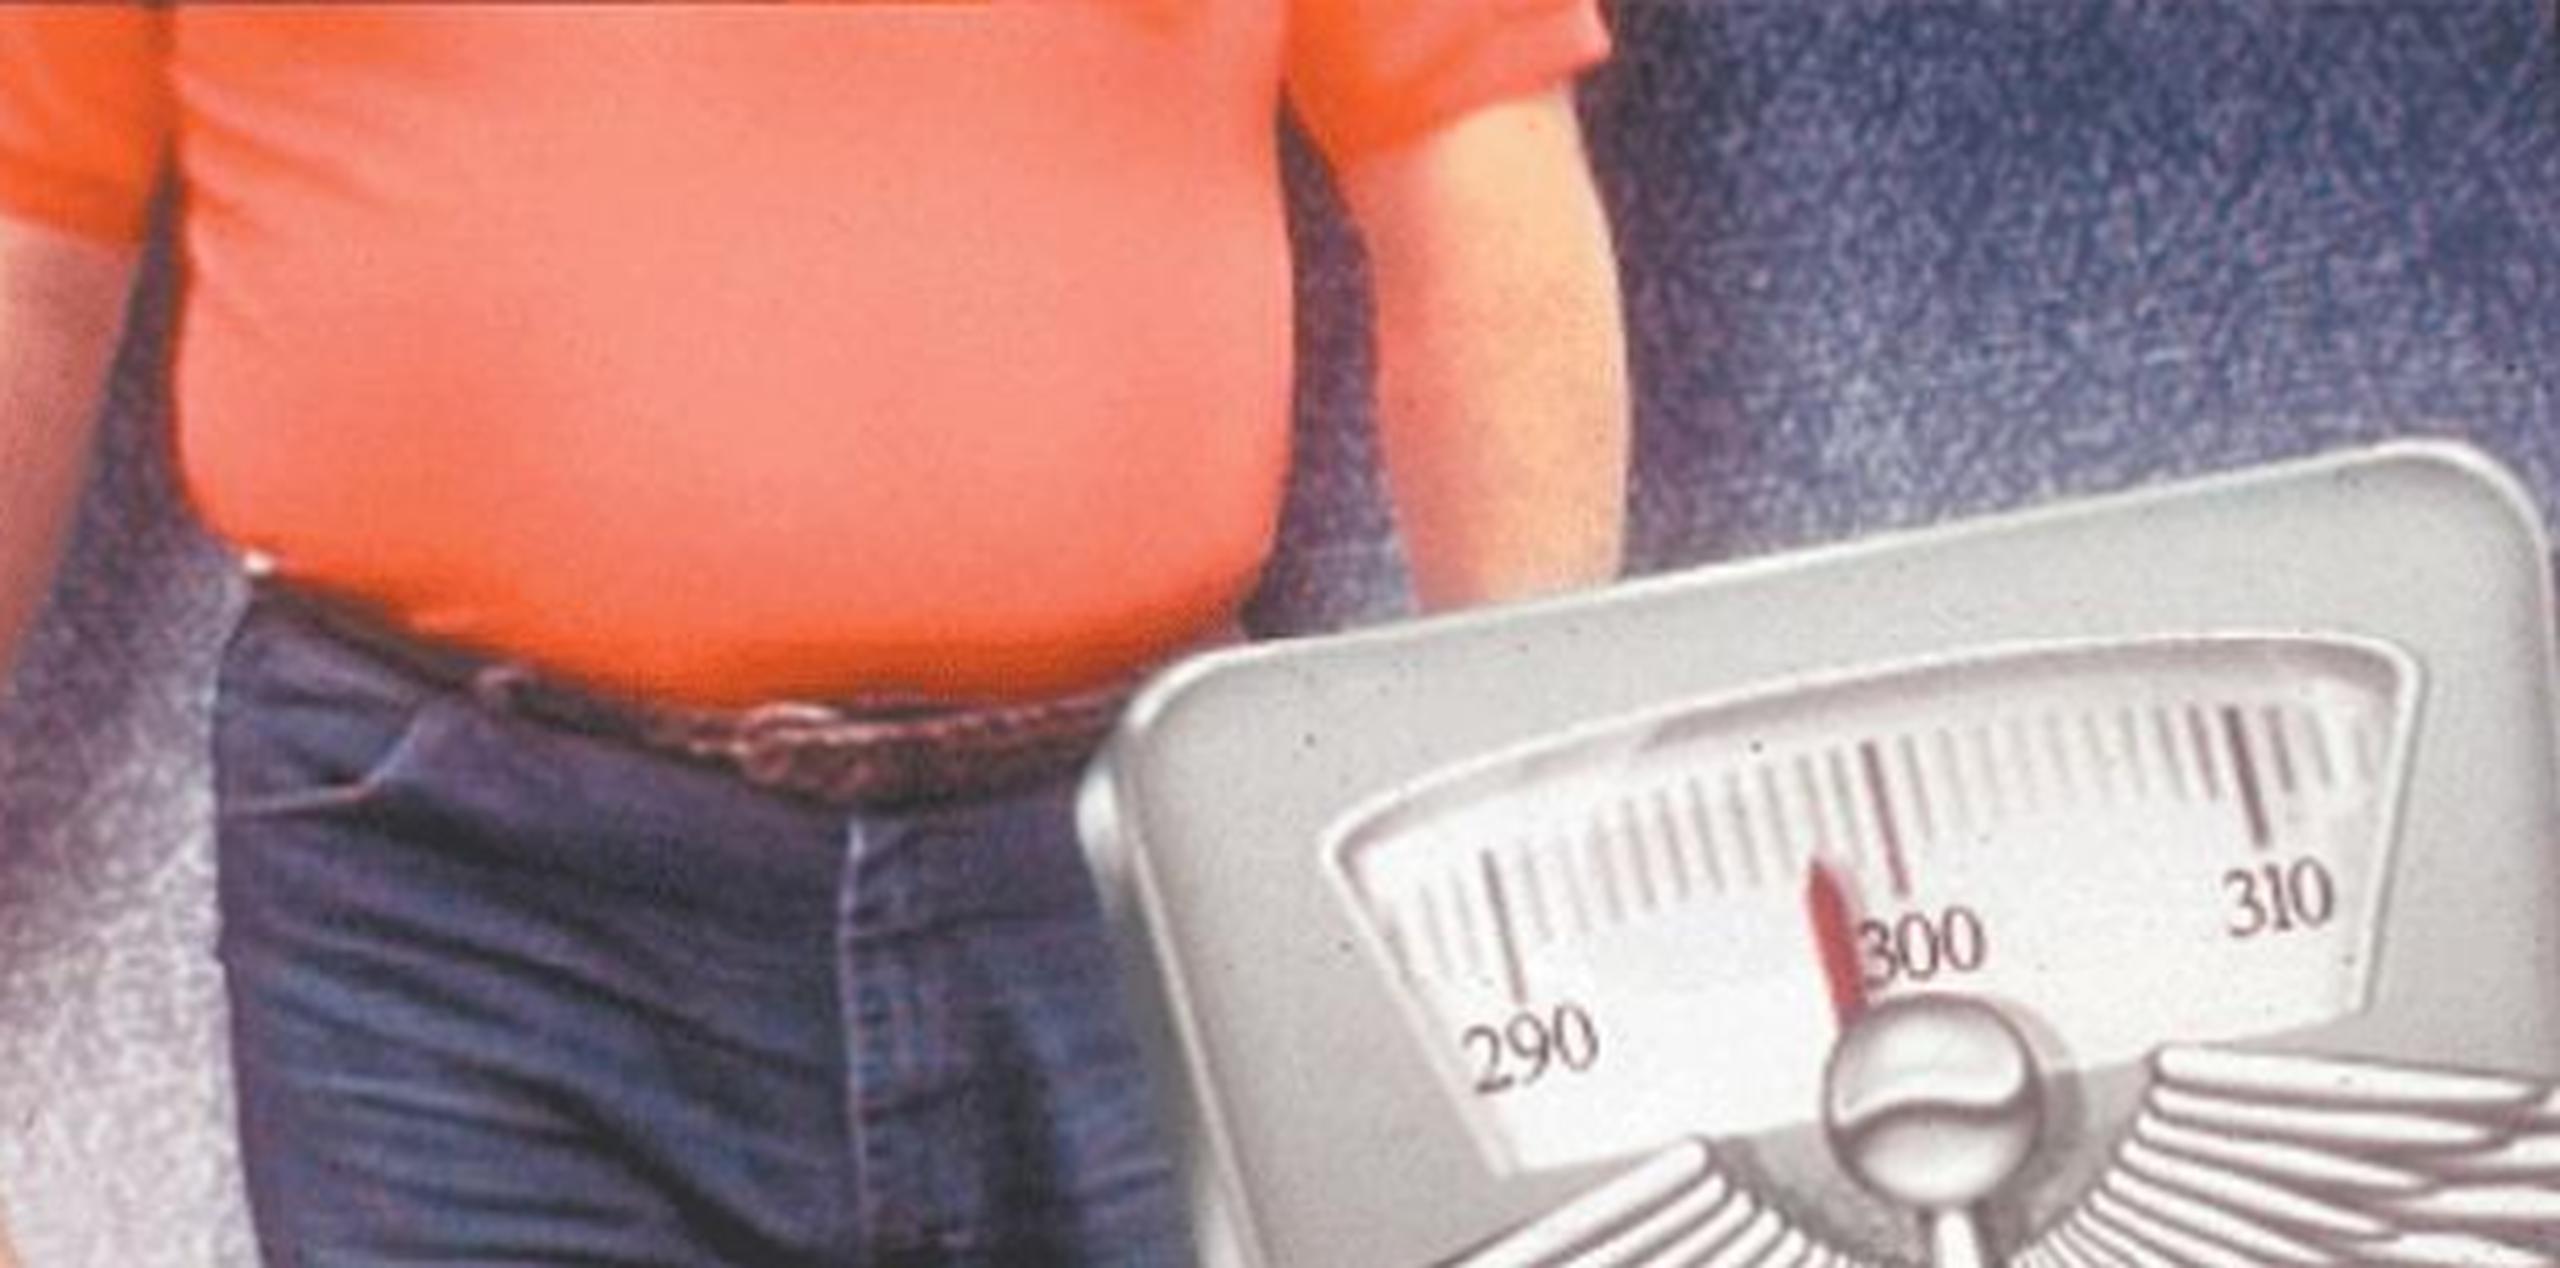 Unos 135,000 casos de la enfermedad -un tercio- podrían ser evitados porque muchos han sido causados por obesidad o sobrepeso. (Archivo)